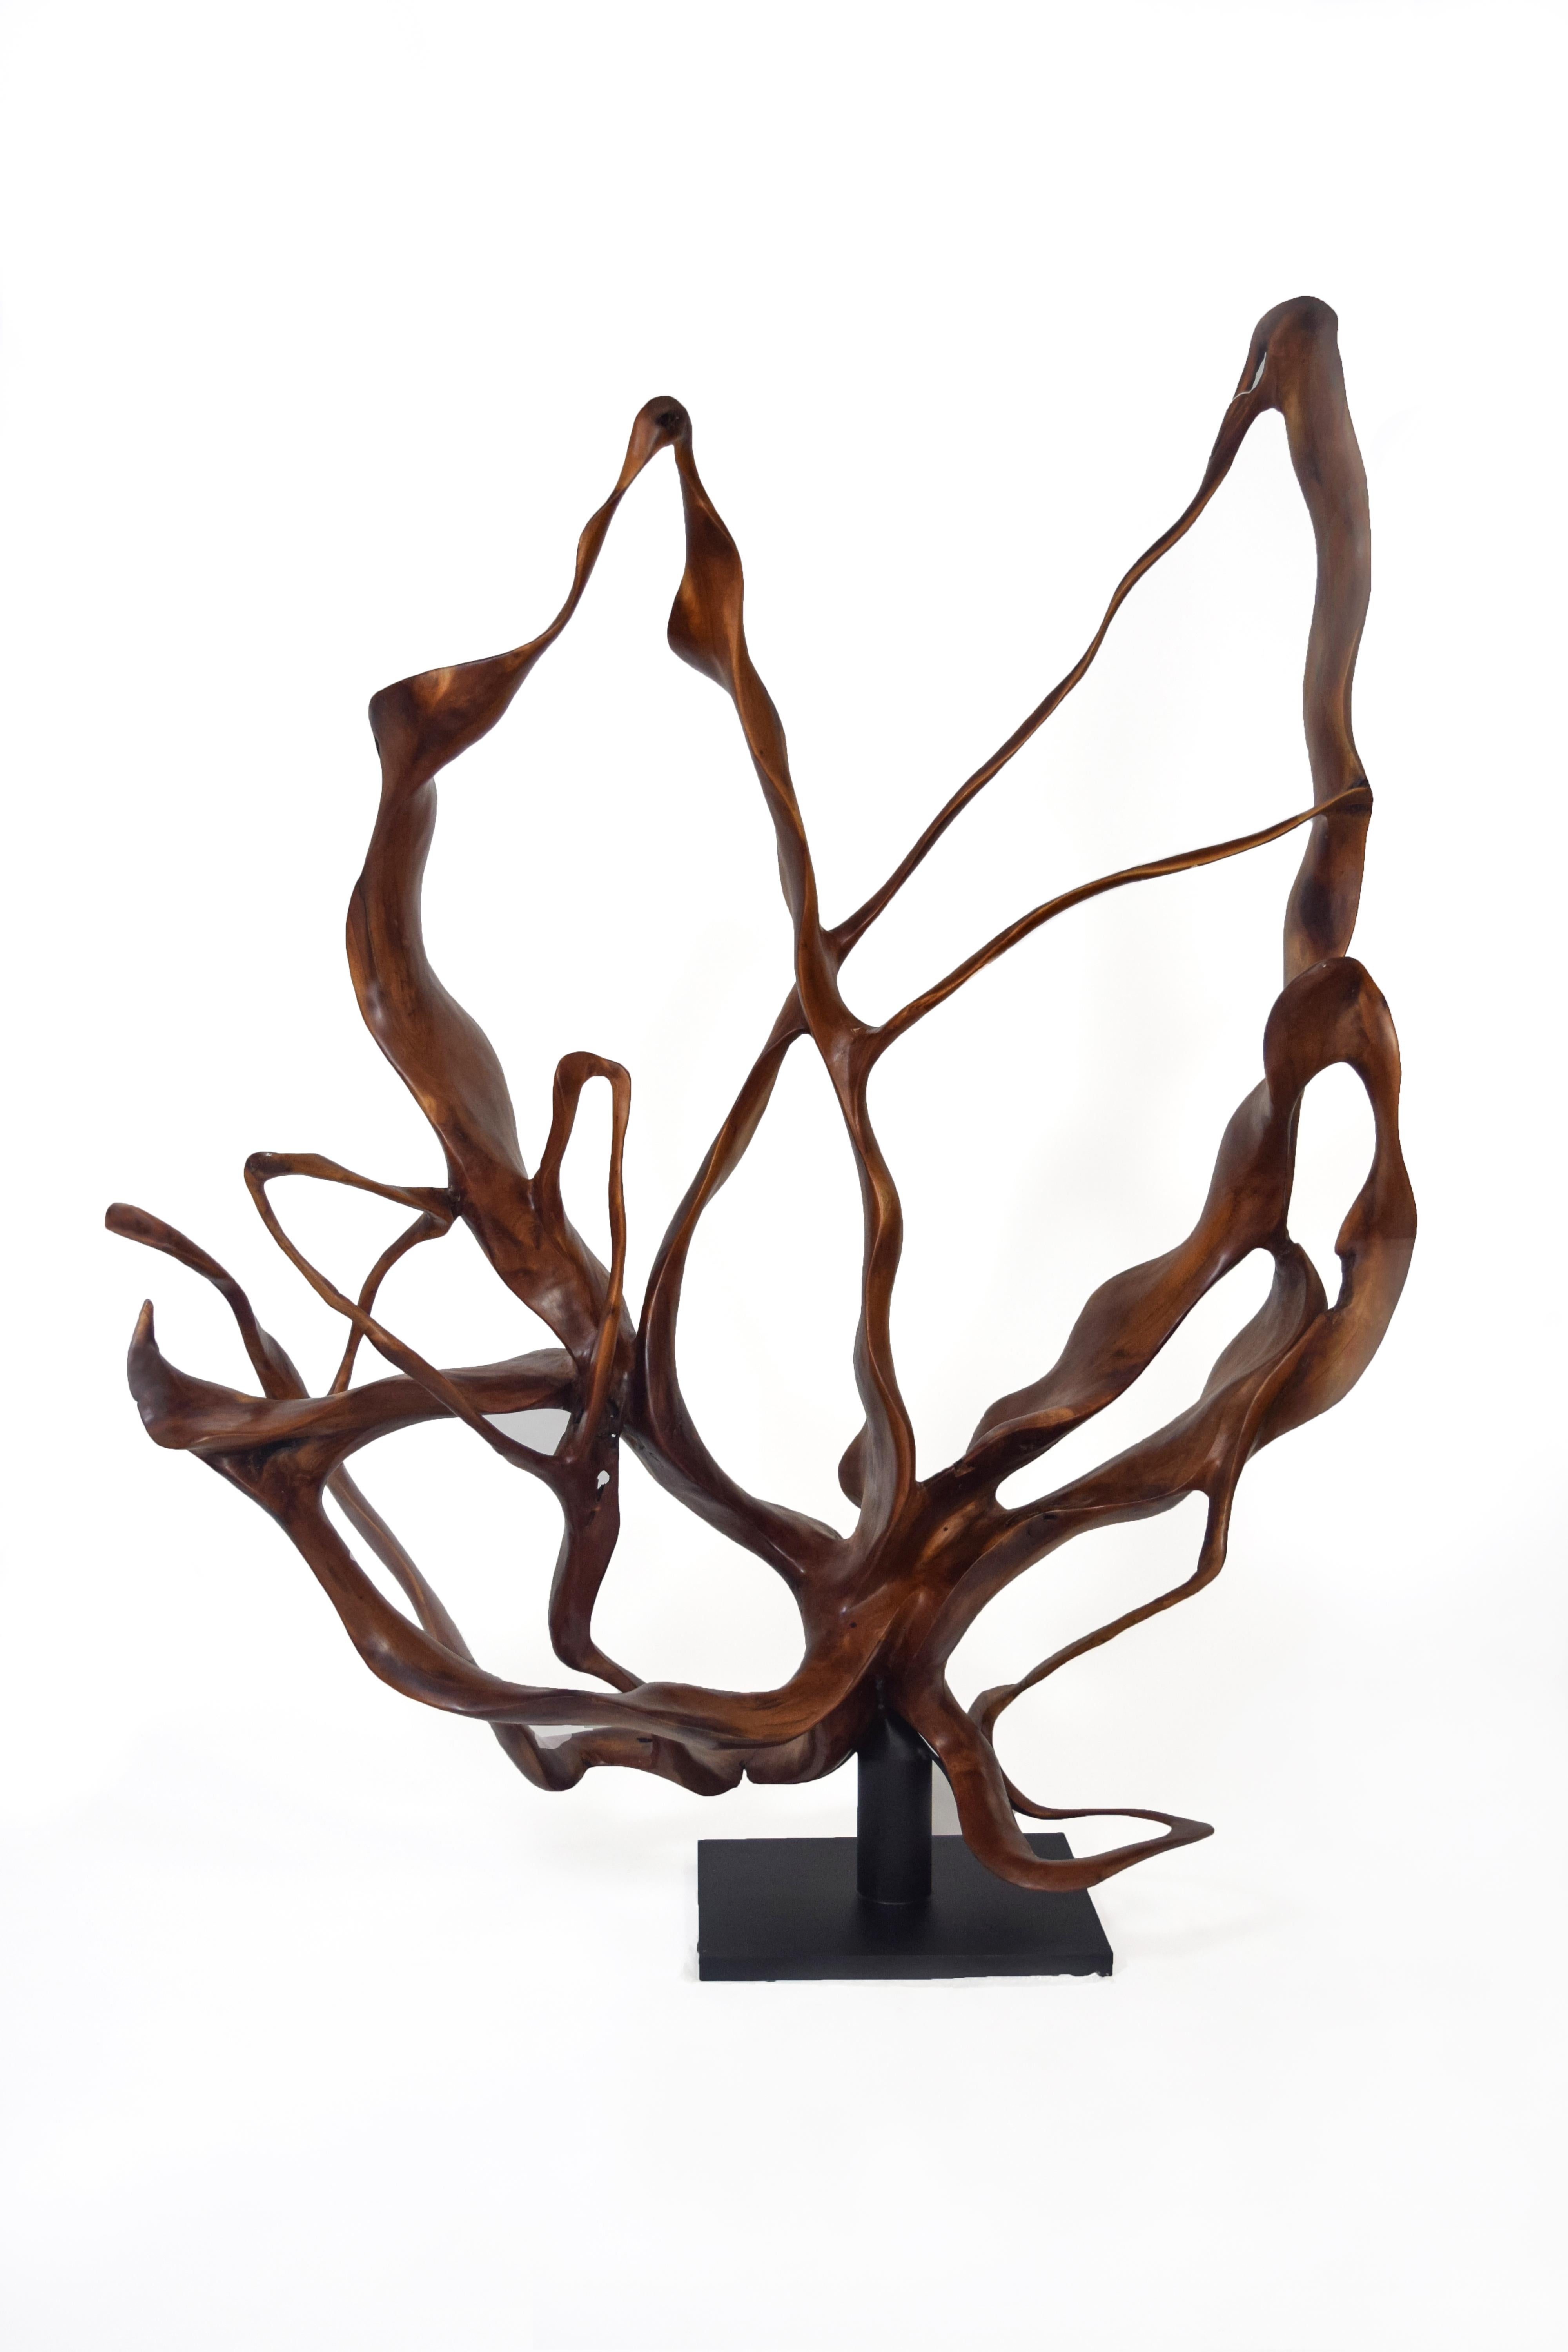 Abstract Sculpture Joaquim Ingravidesa - Monsoon - 21e siècle, Contemporain, Sculpture abstraite, Bois d'acajou, Roots